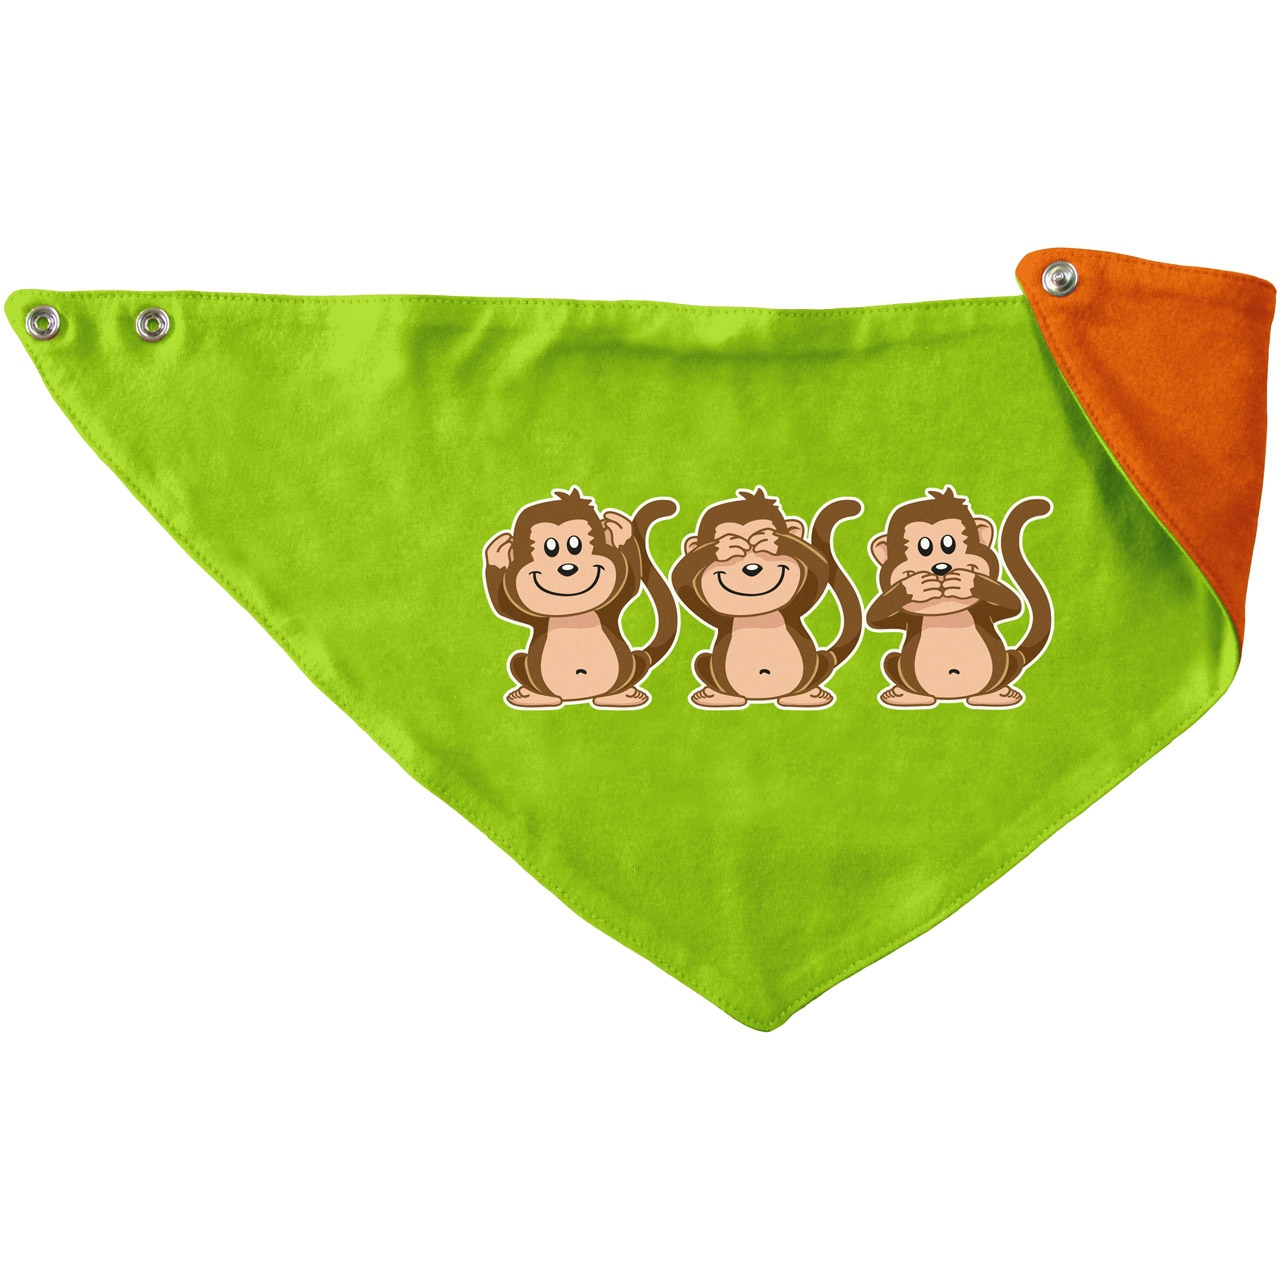 Affen Kinder Dreieckstuch hellgrün/orange